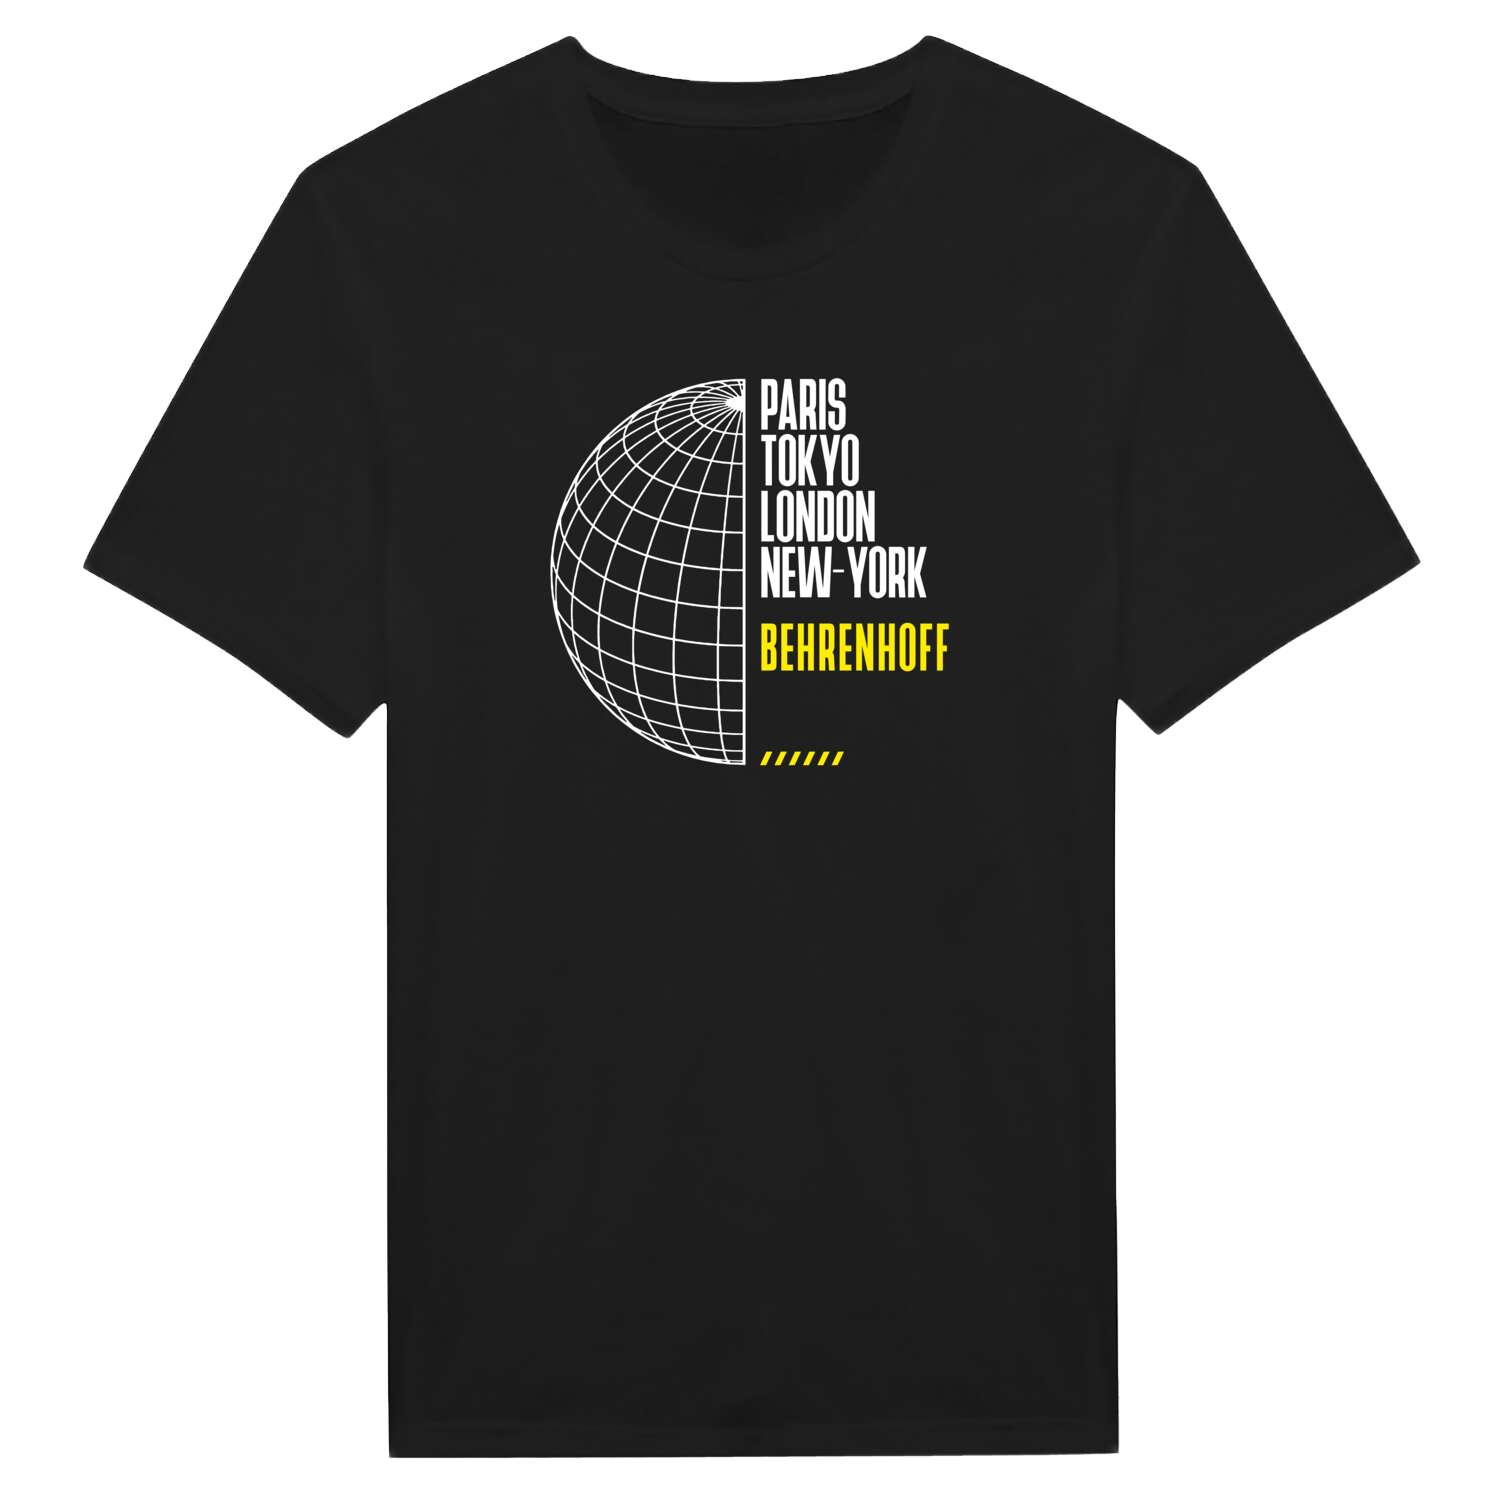 Behrenhoff T-Shirt »Paris Tokyo London«